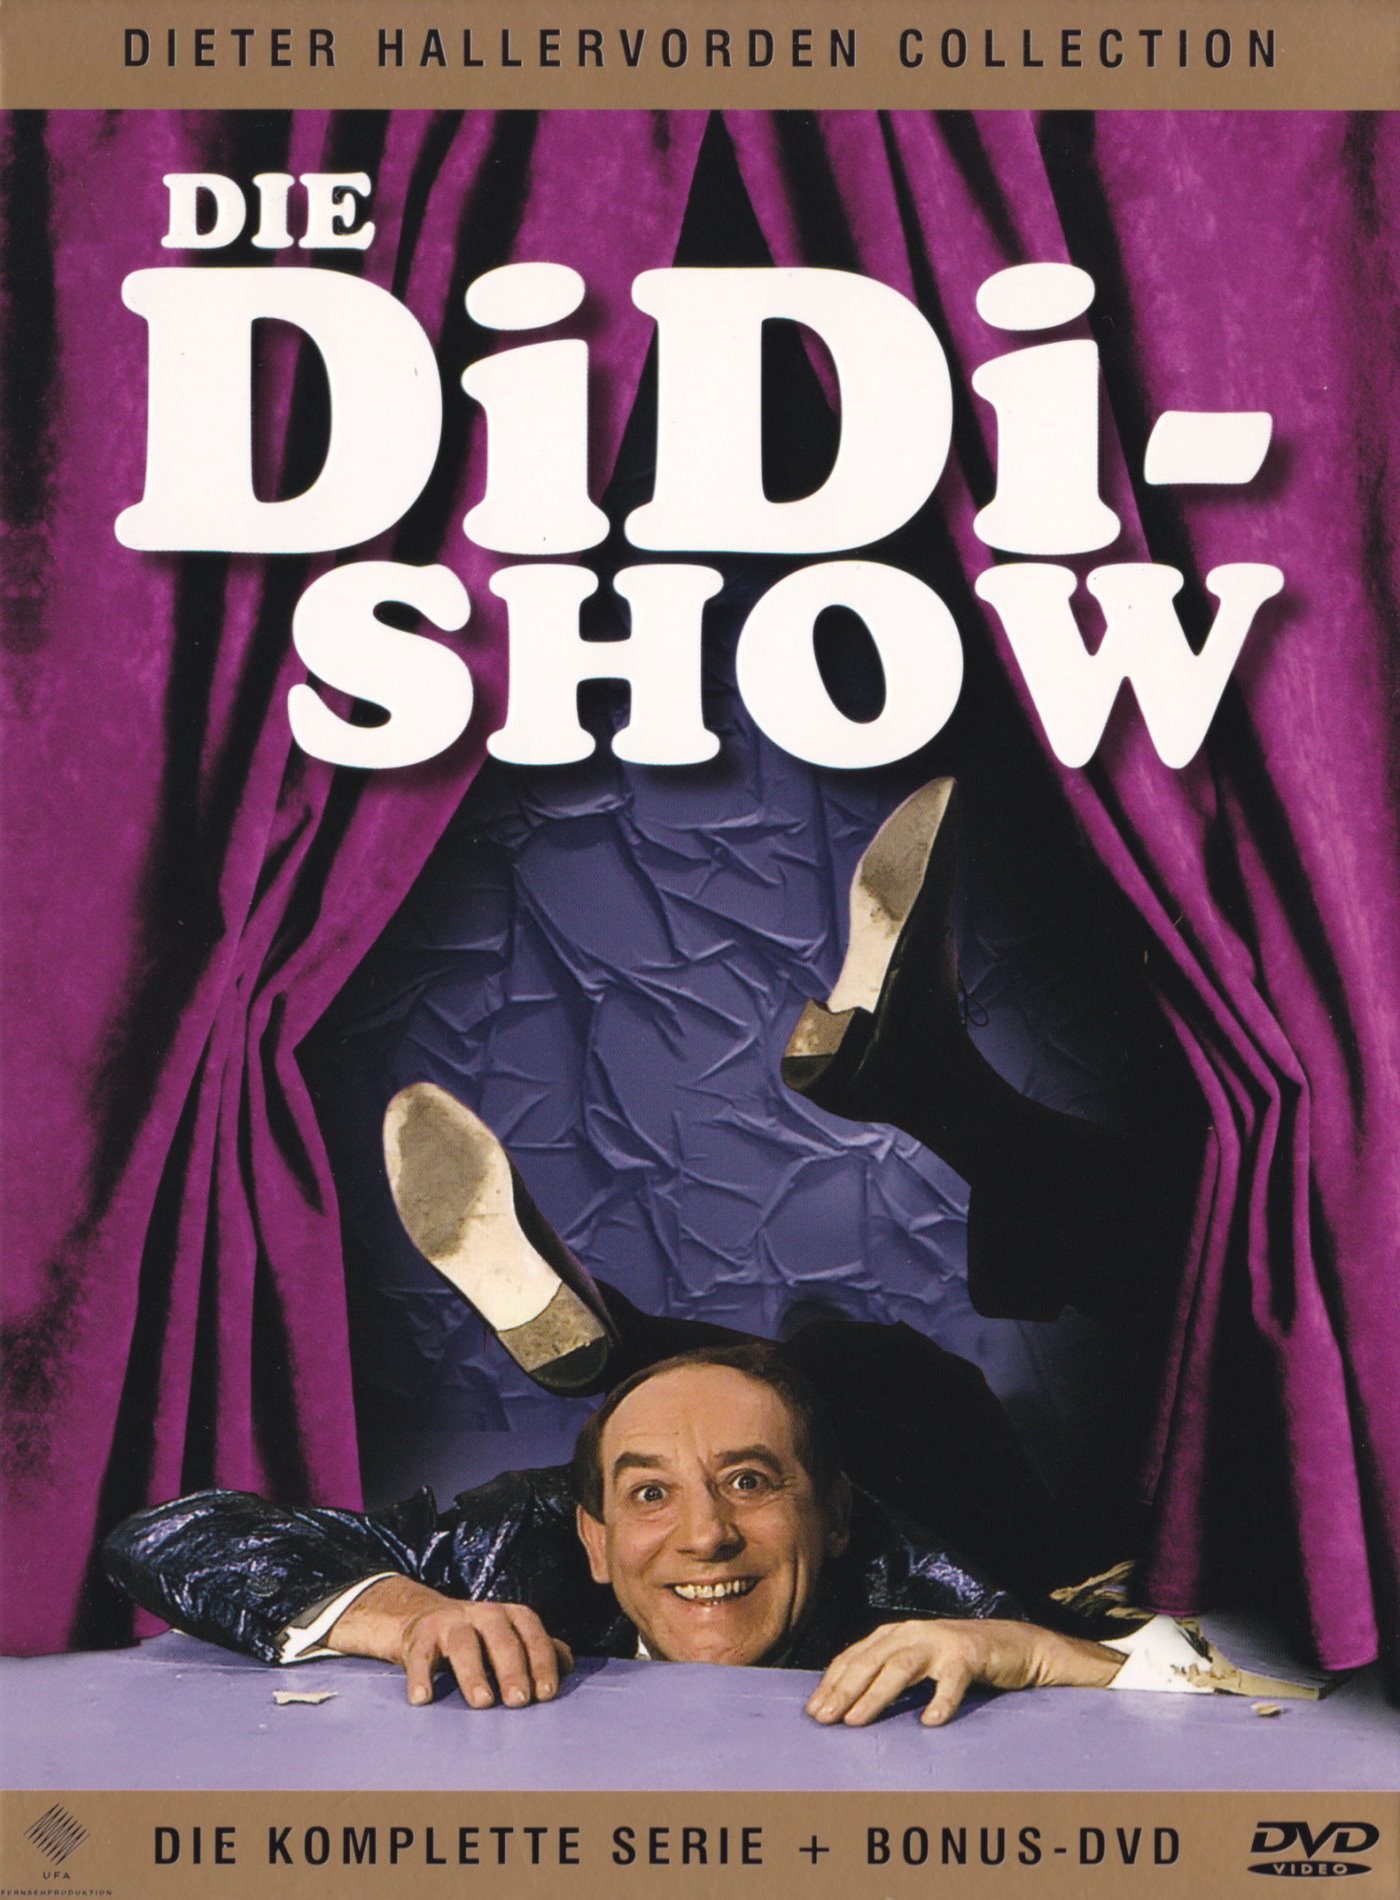 Cover - Die Didi-Show.jpg